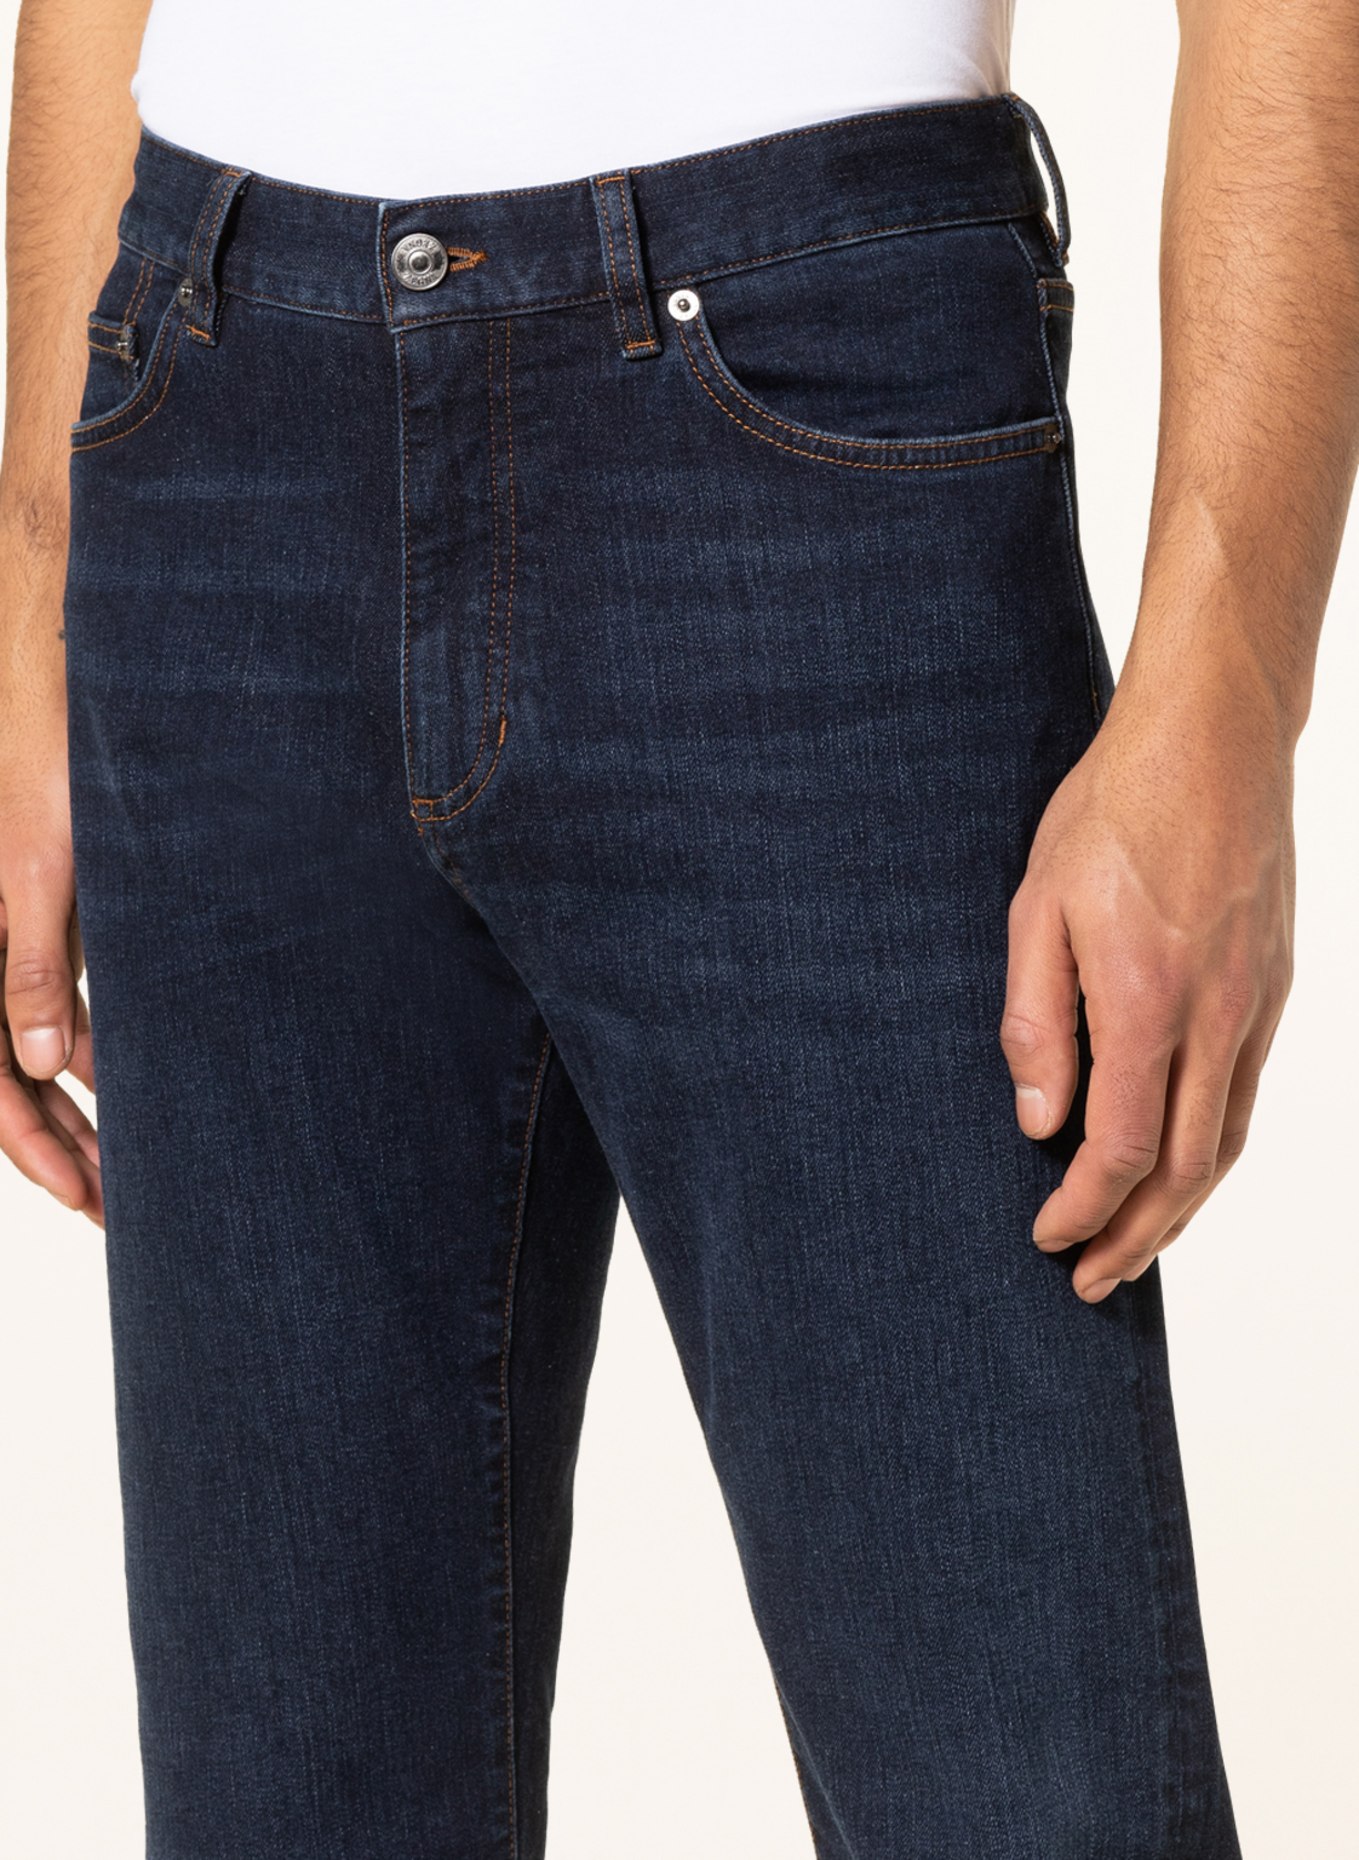 ZEGNA Jeans comfort fit, Color: 001 DARK BLUE (Image 5)